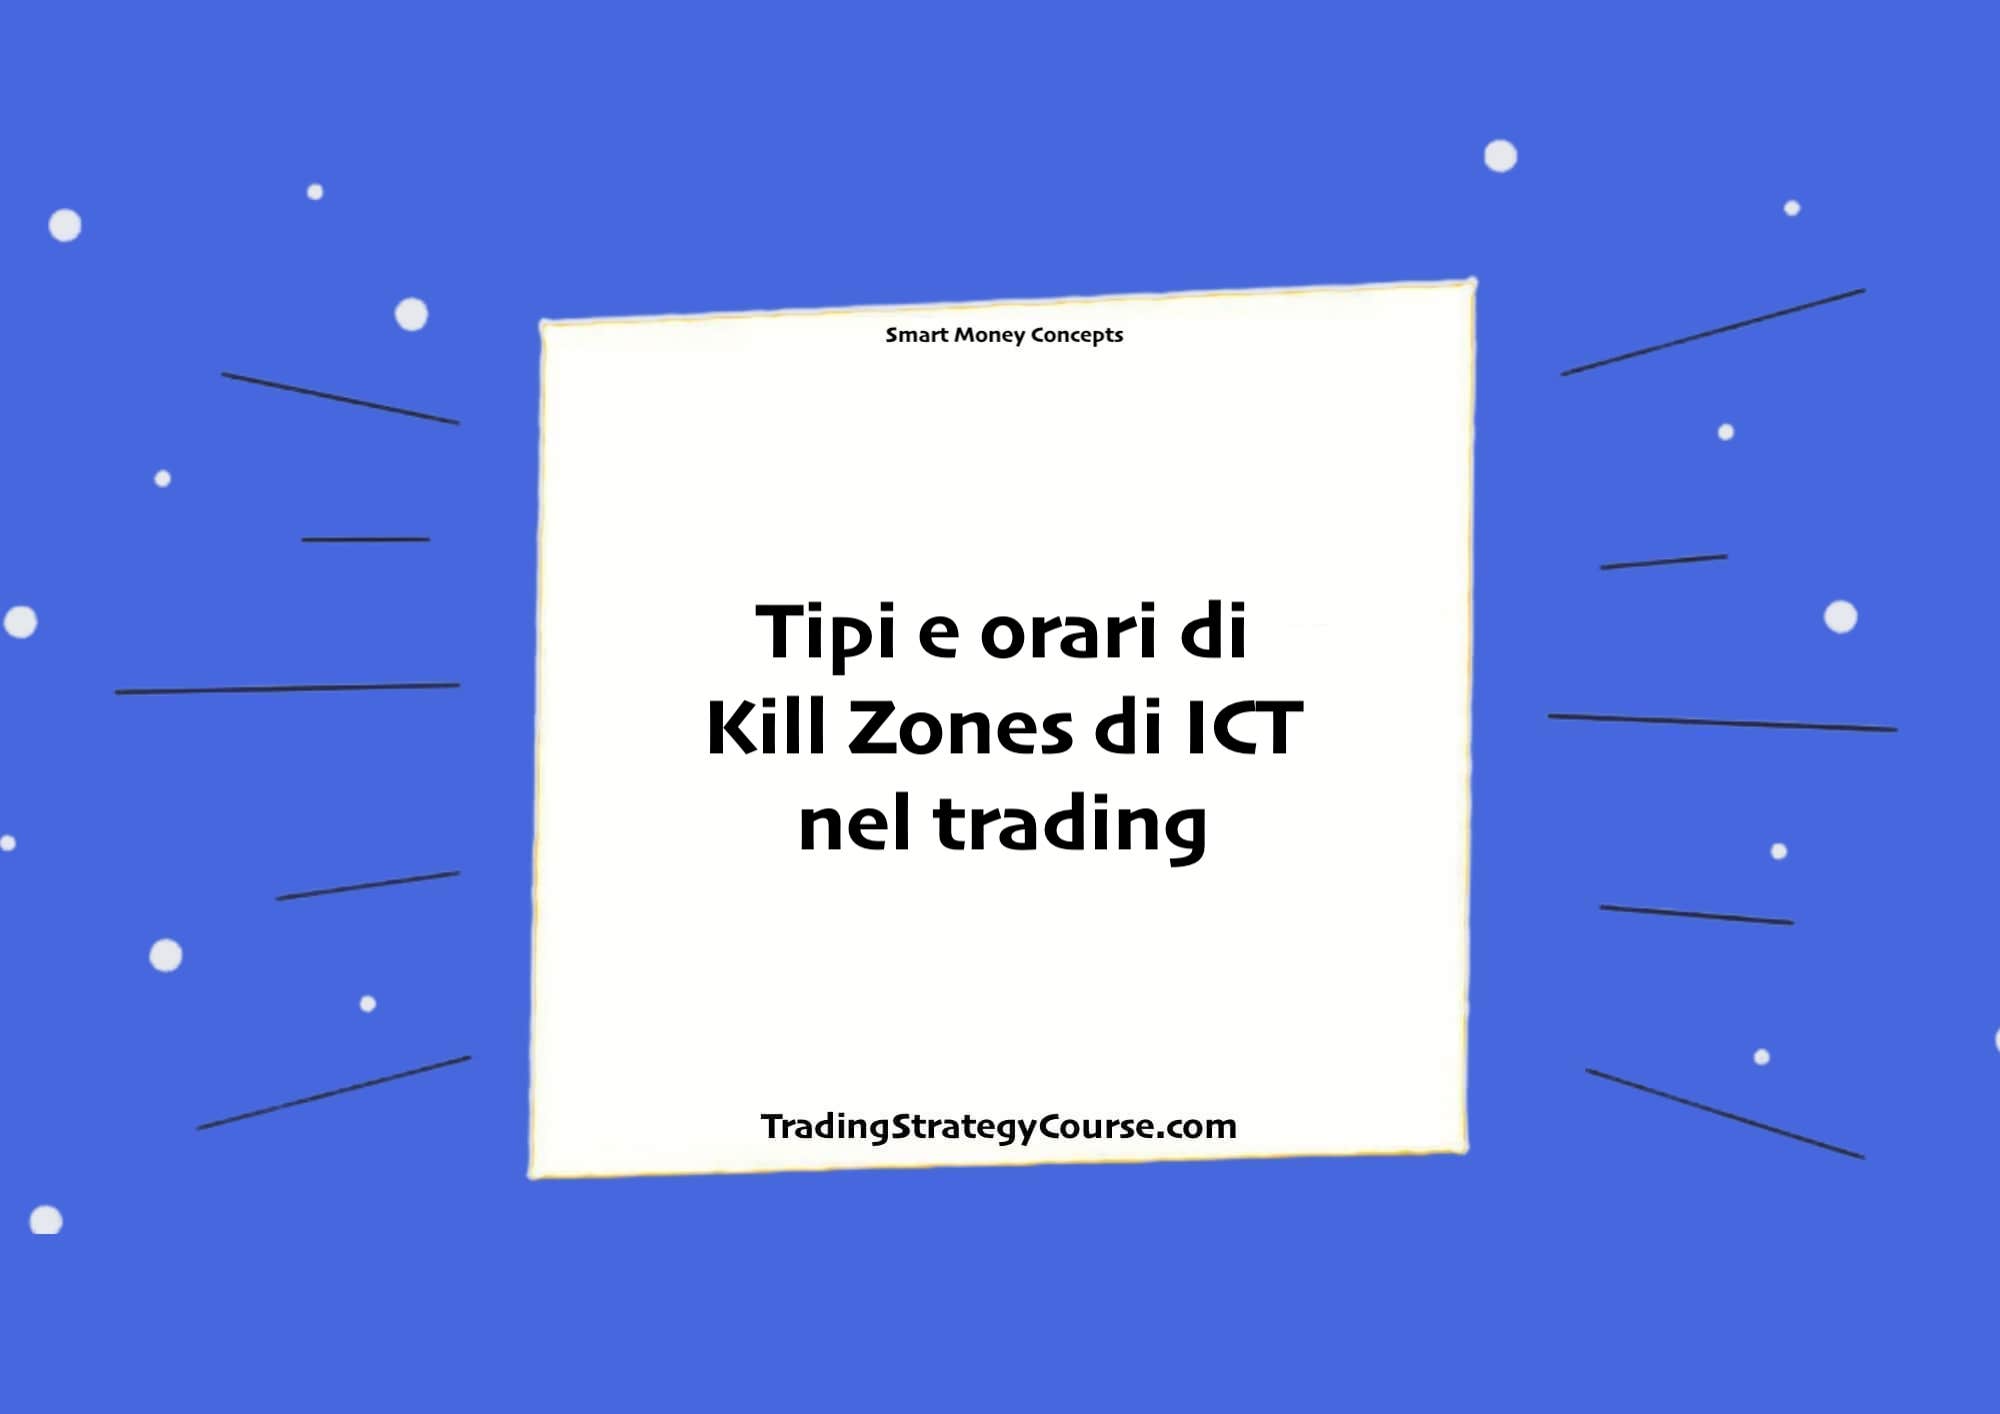 Tipi e orari di Kill Zones di ICT nel trading